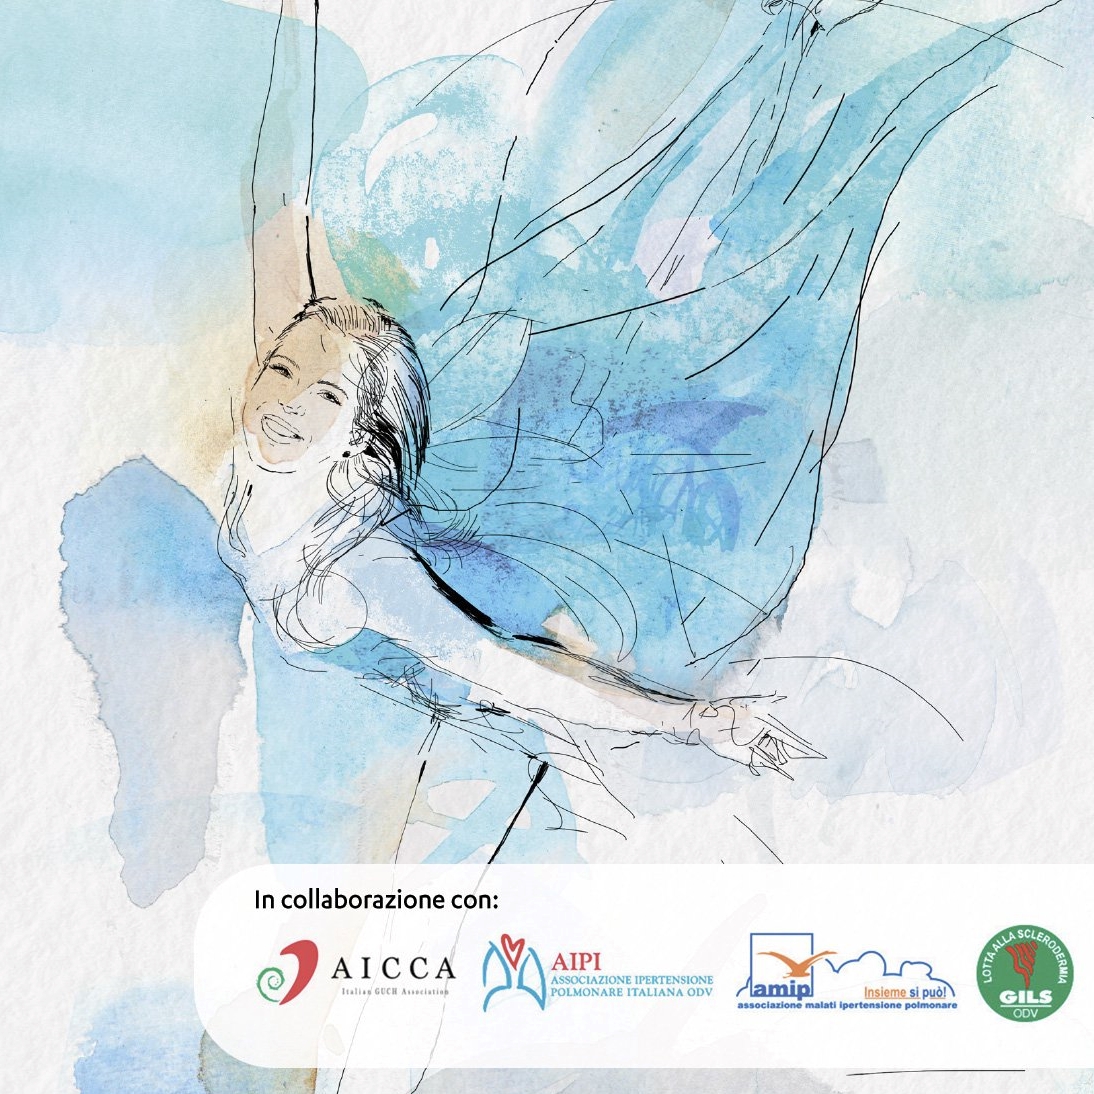 Palermo, "La vita in un respiro": arriva in Sicilia la campagna sulla ipertensione polmonare